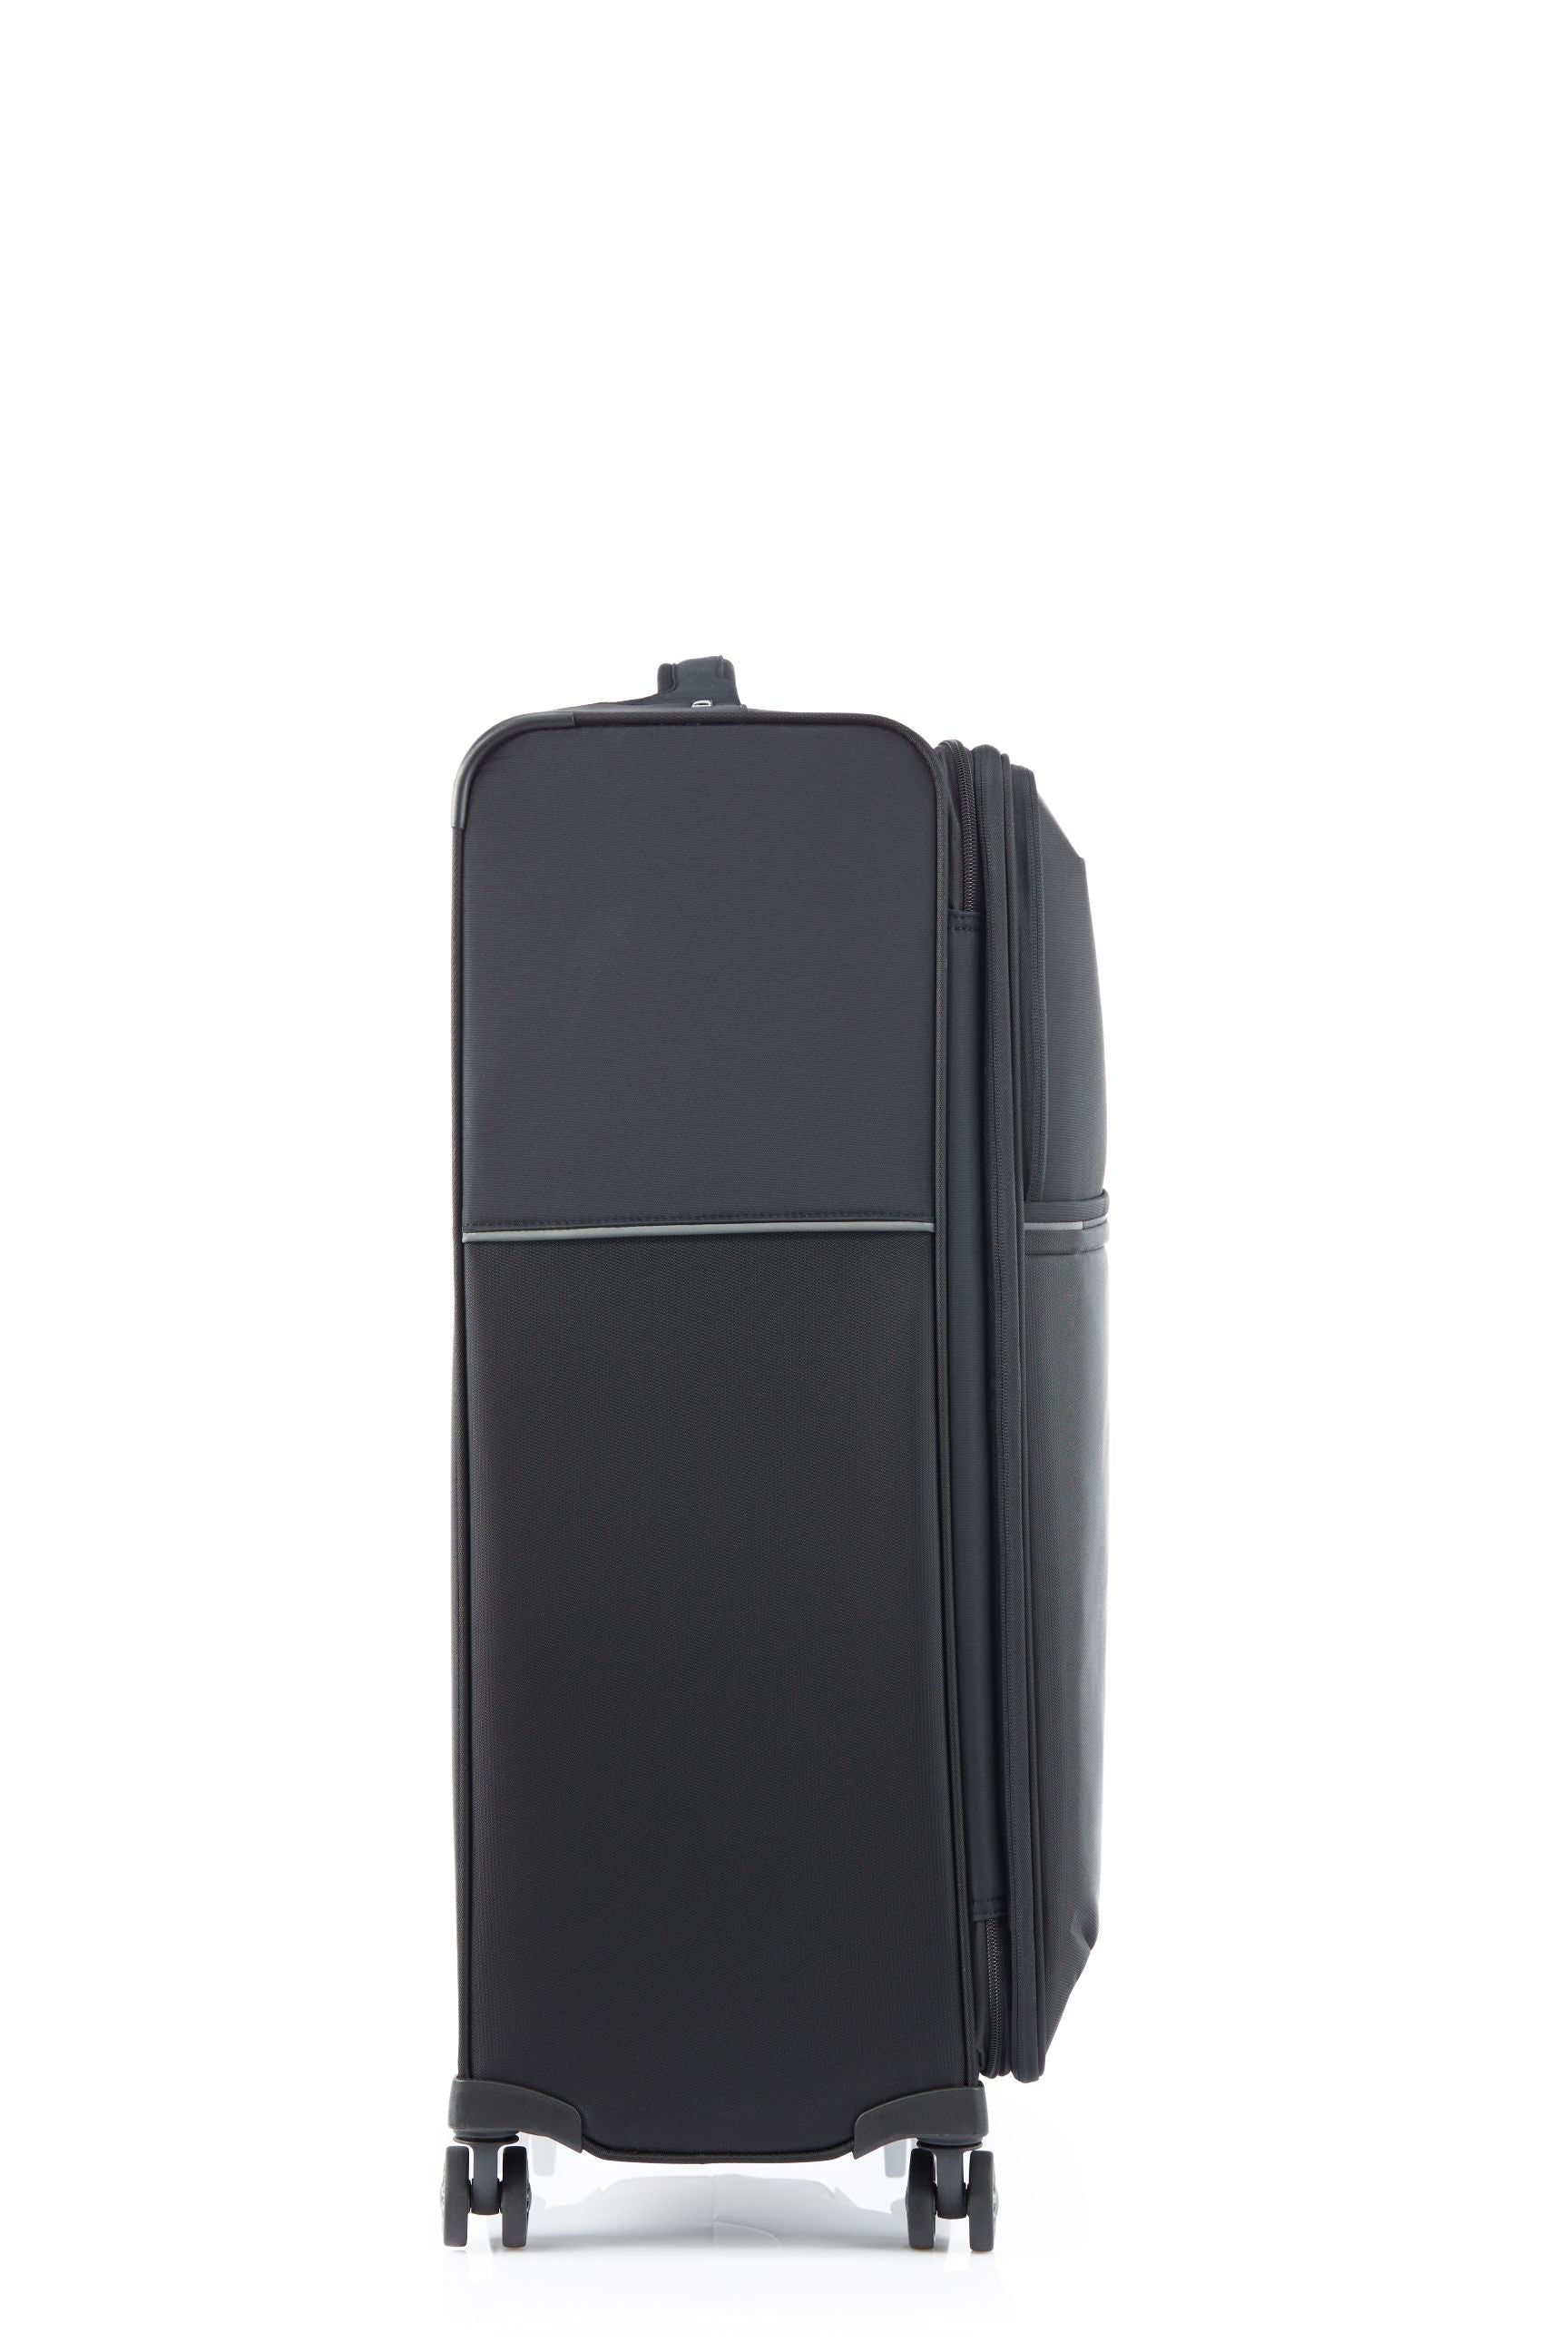 Samsonite - 73HR 78cm Large Suitcase - Black-6